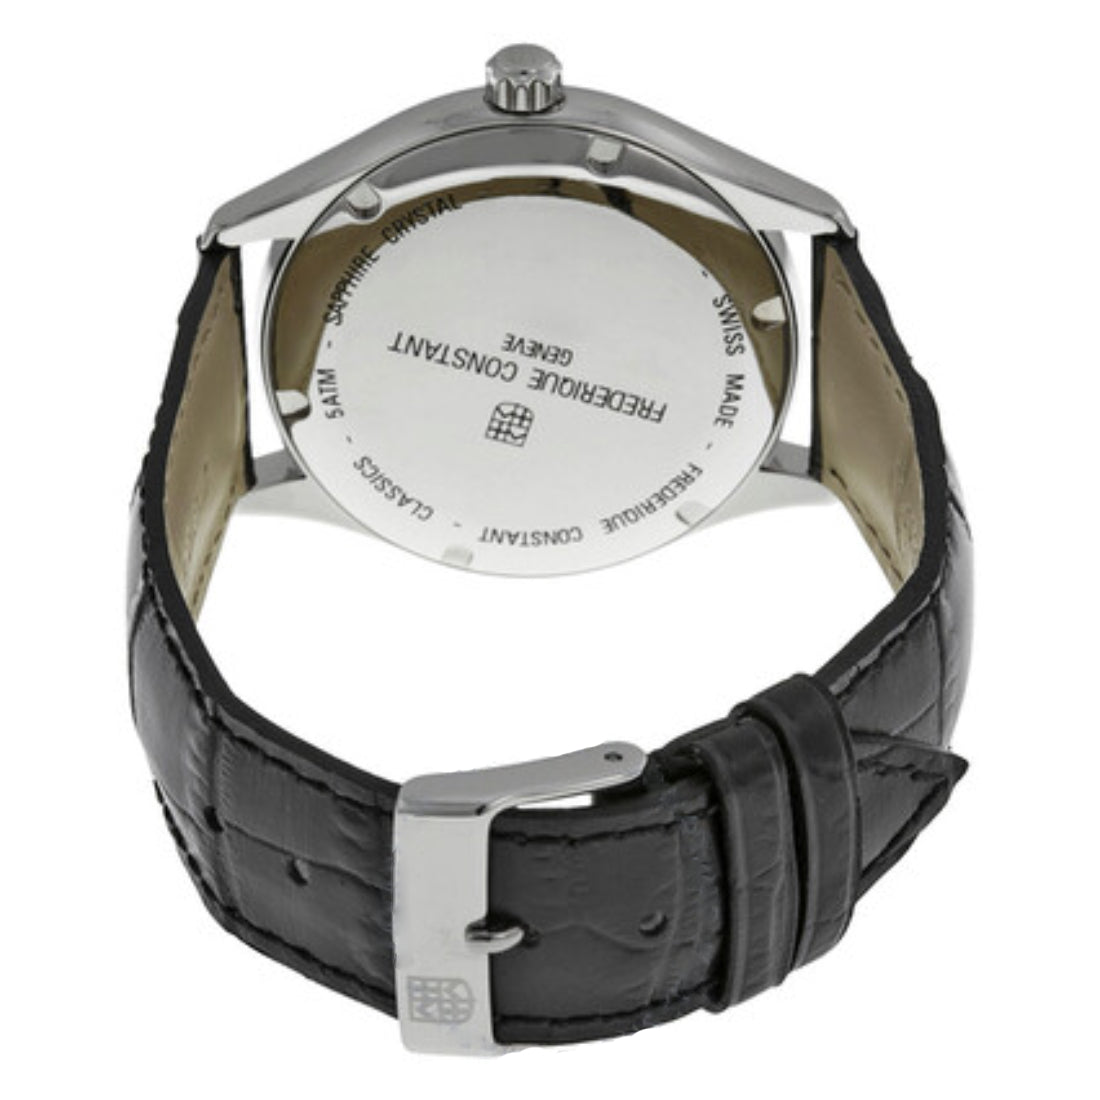 Frederique Constant Men's Automatic Movement White Dial Watch - FC-0035